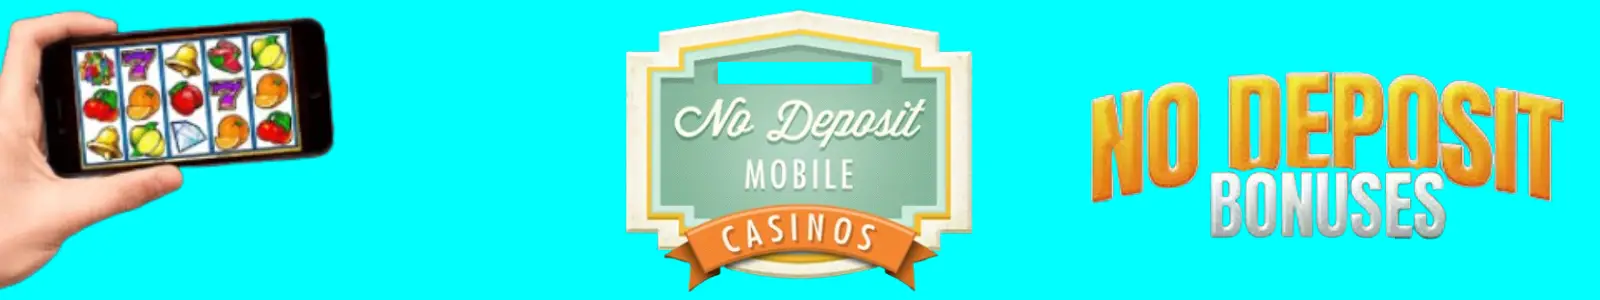 No Deposit Bonus Mobile Casinos